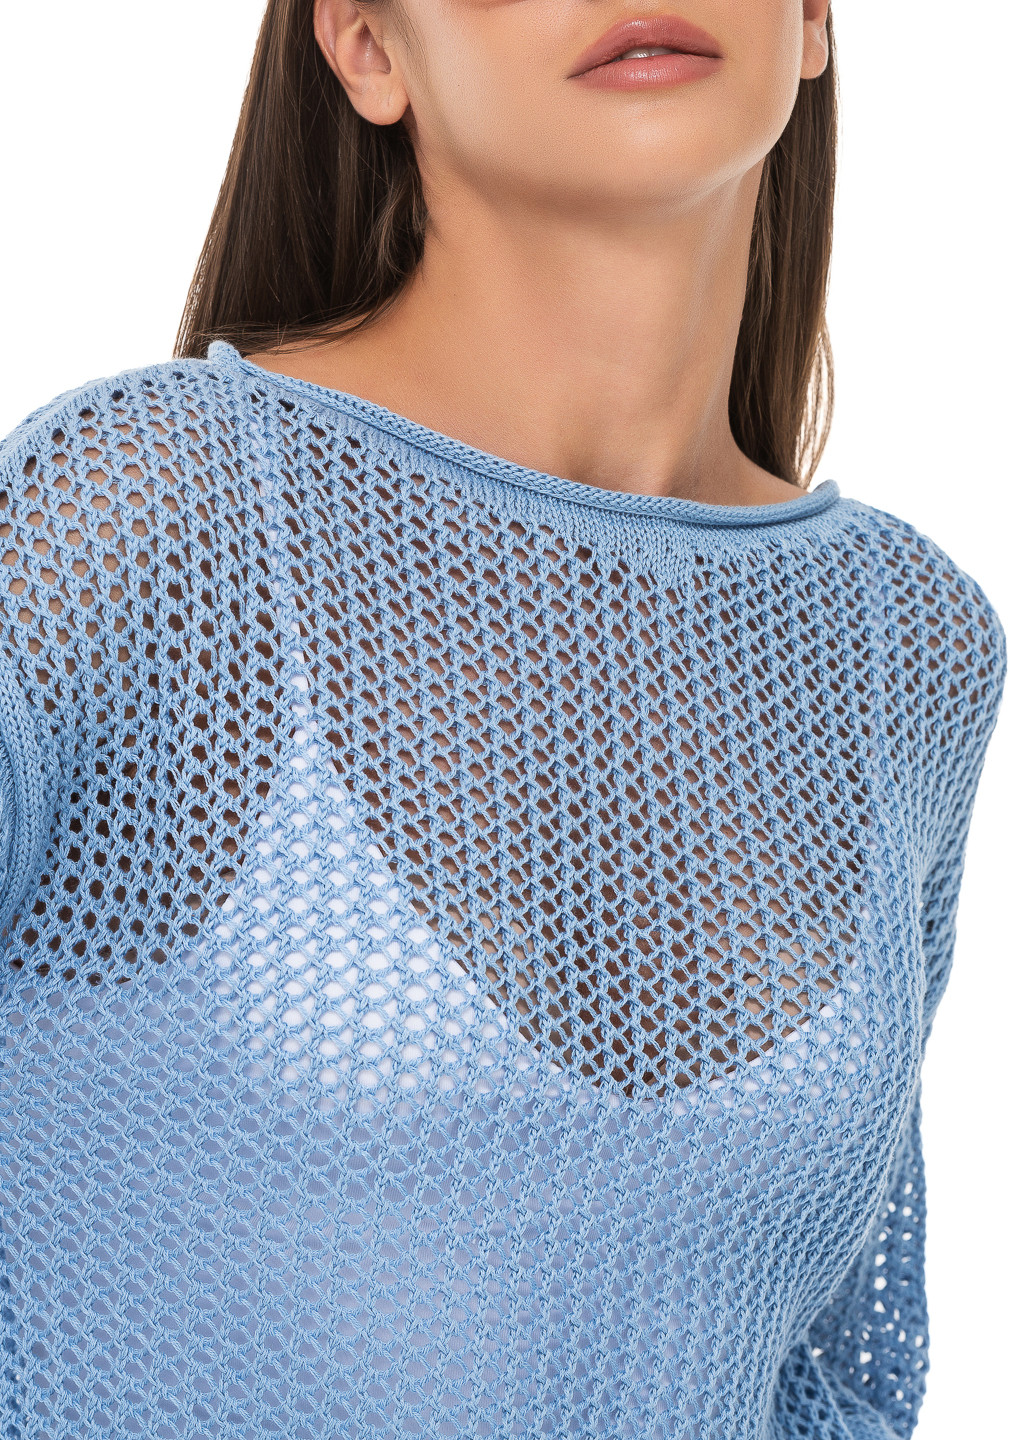 Голубой ажурный свитер SVTR